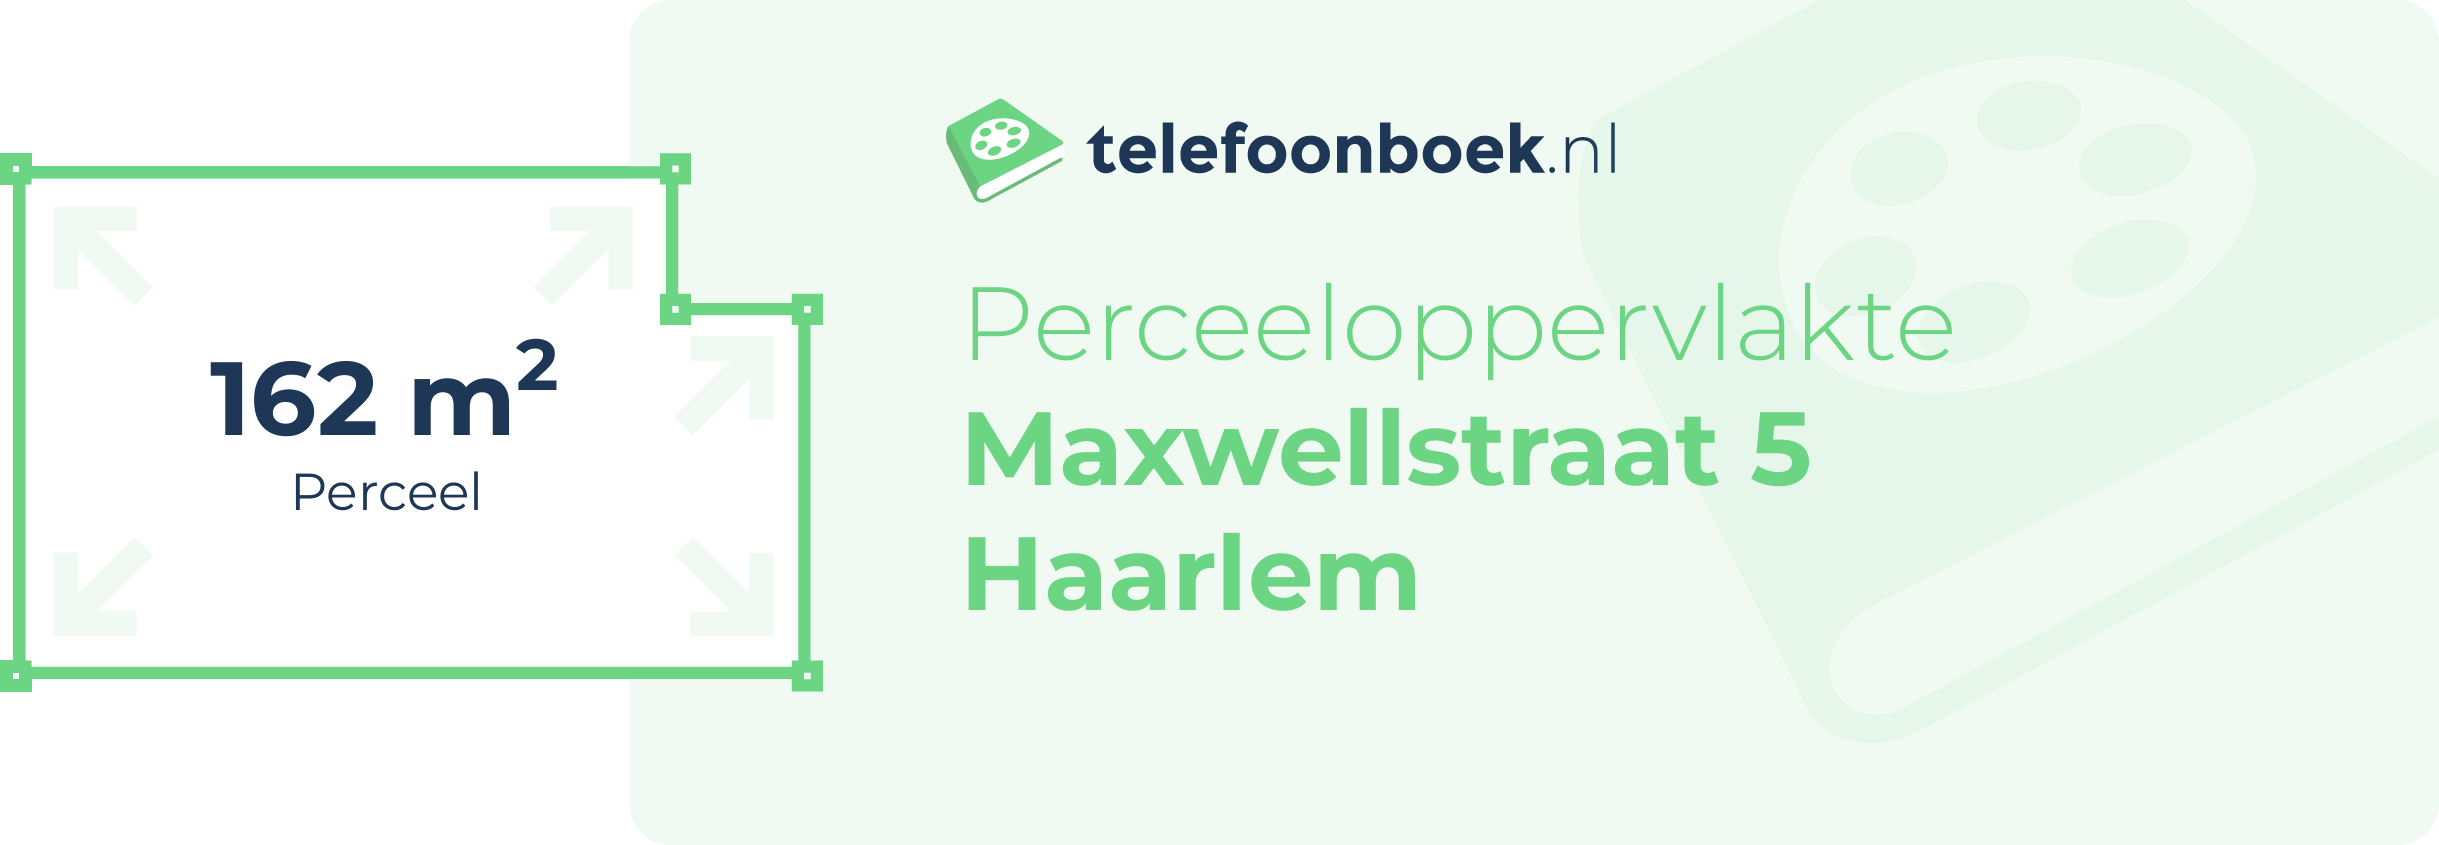 Perceeloppervlakte Maxwellstraat 5 Haarlem